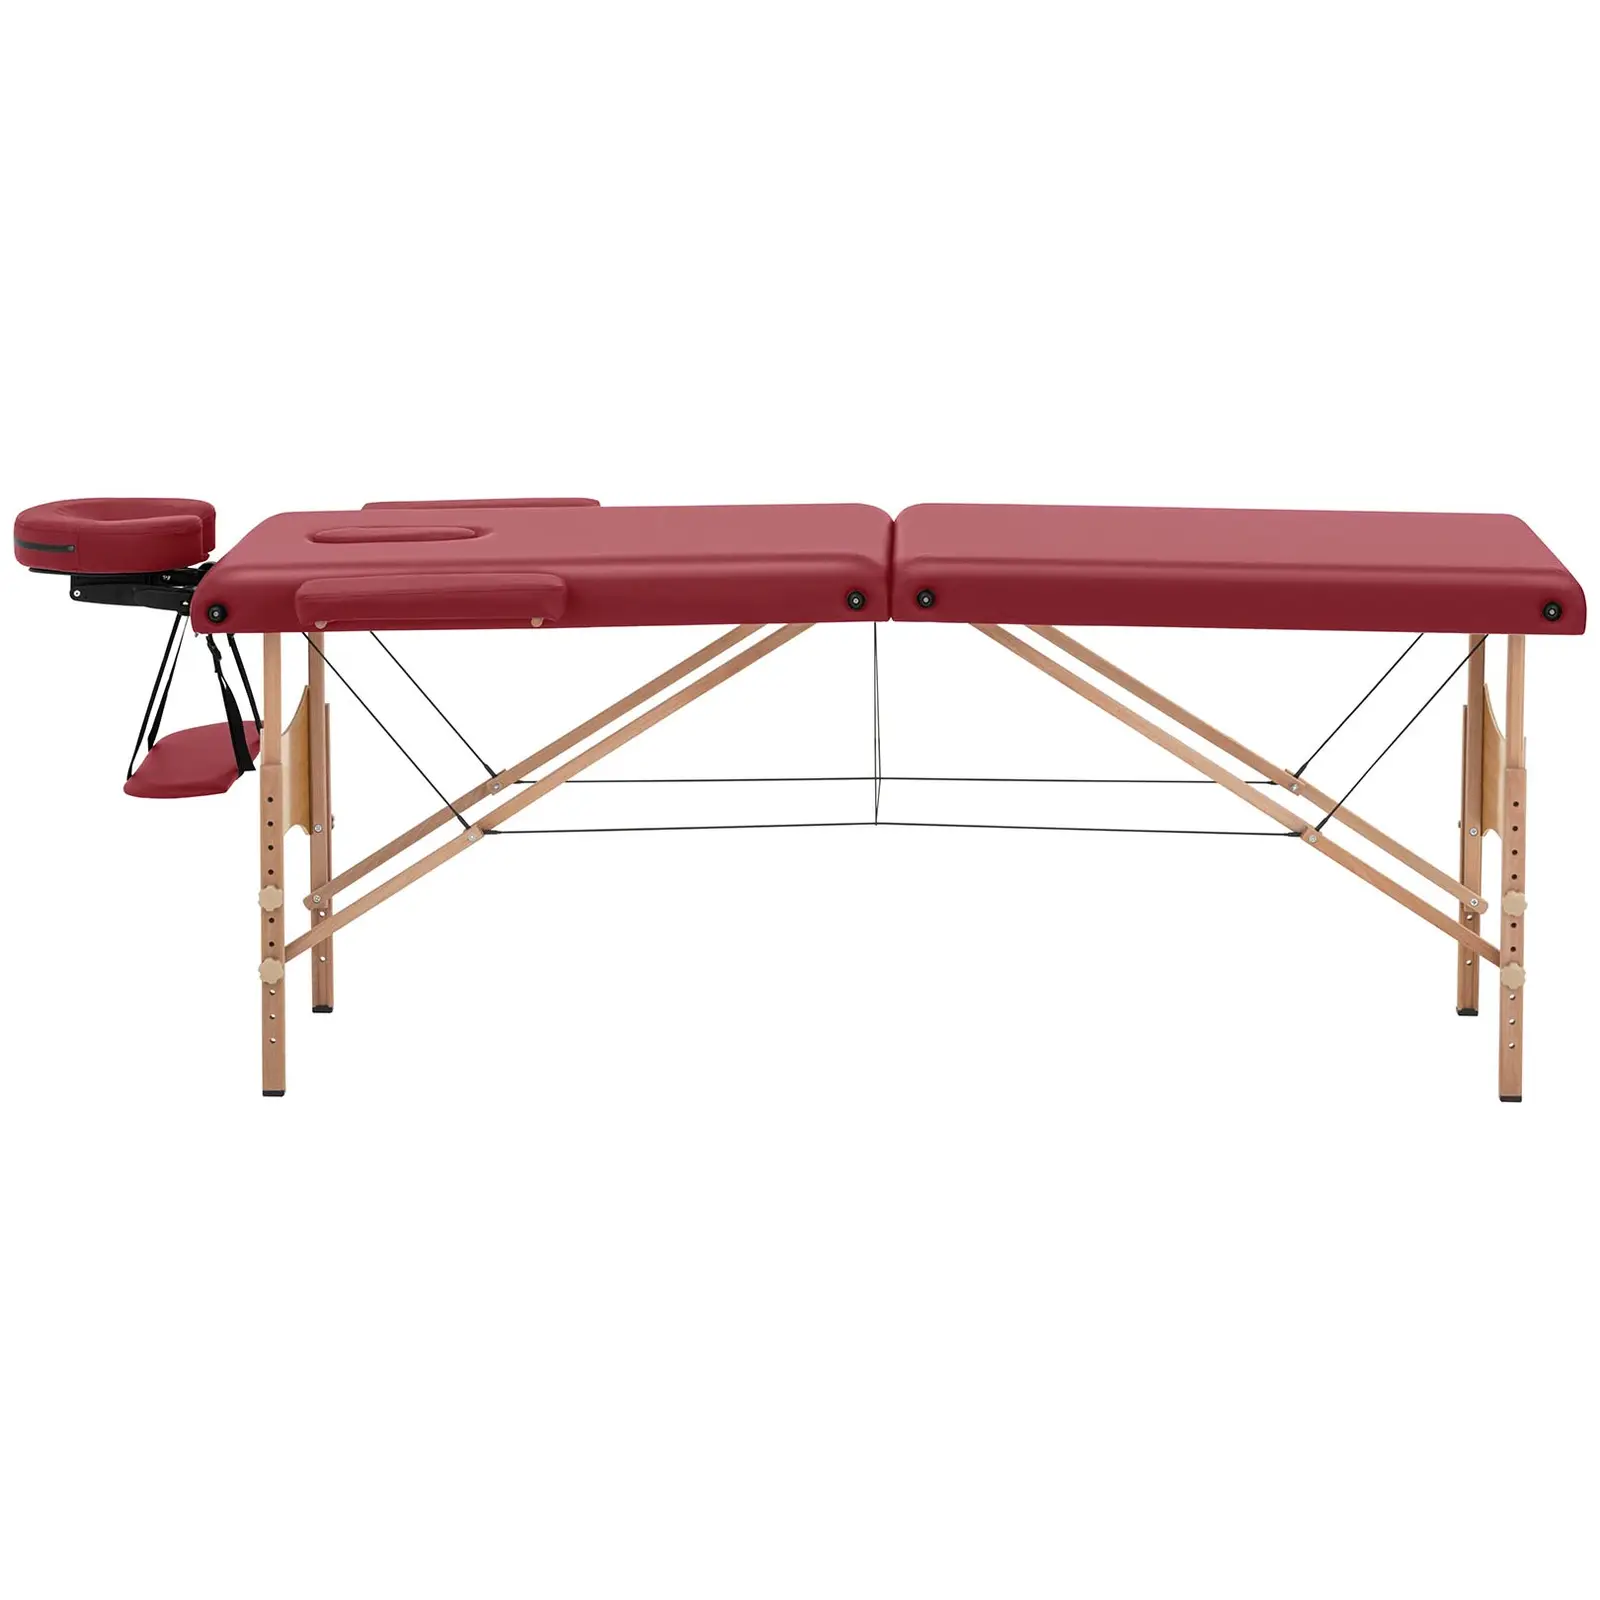 Lettino massaggio portatile - 185 x 60 x 63-86 cm - 227 kg - Rosso